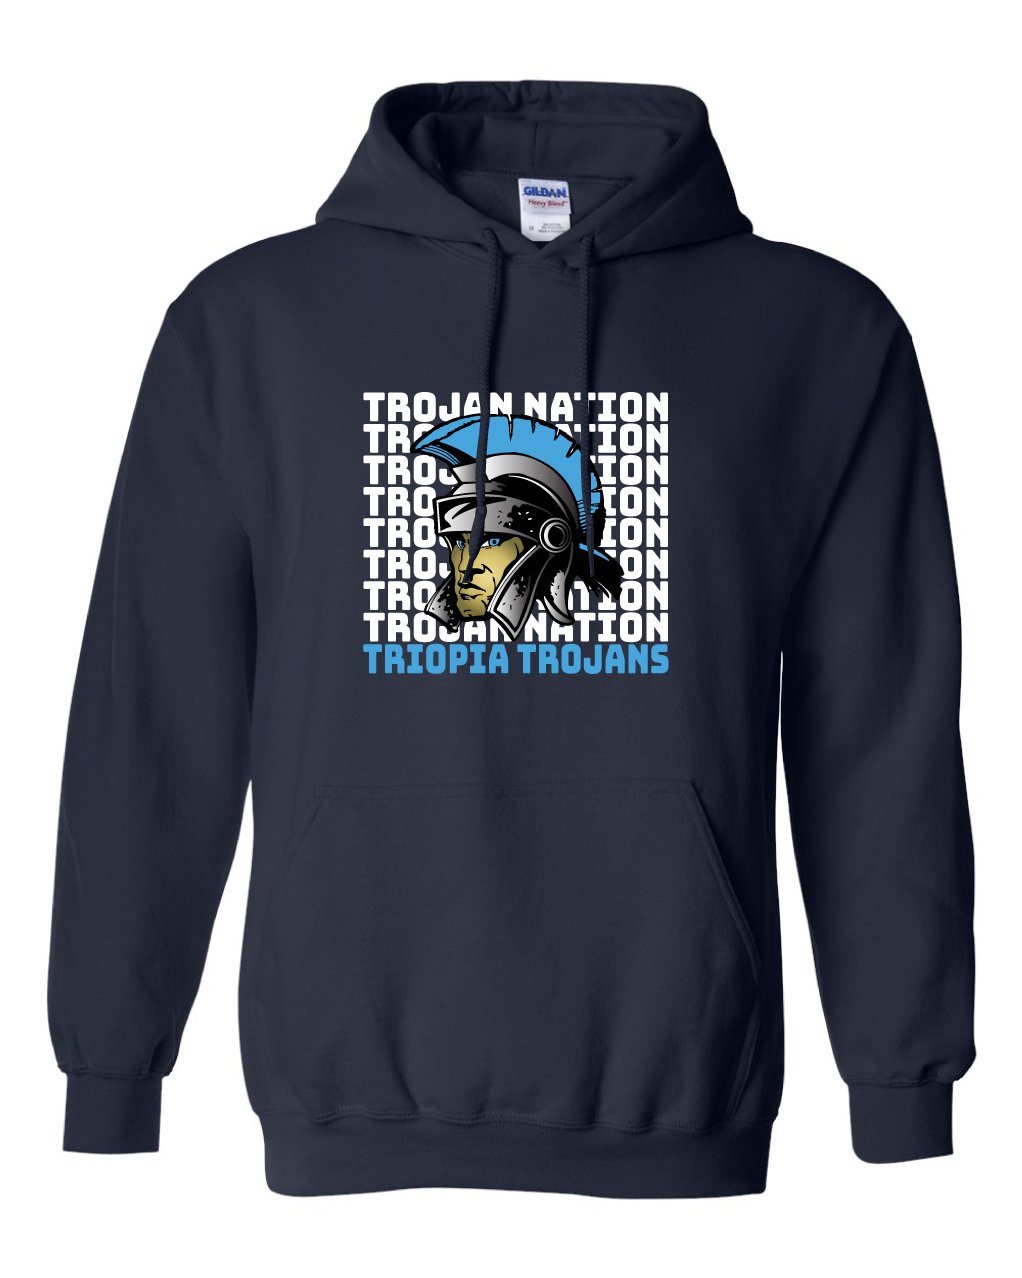 Triopia Trojans - Trojan Nation With Trojan Mascot Hooded Sweatshirt